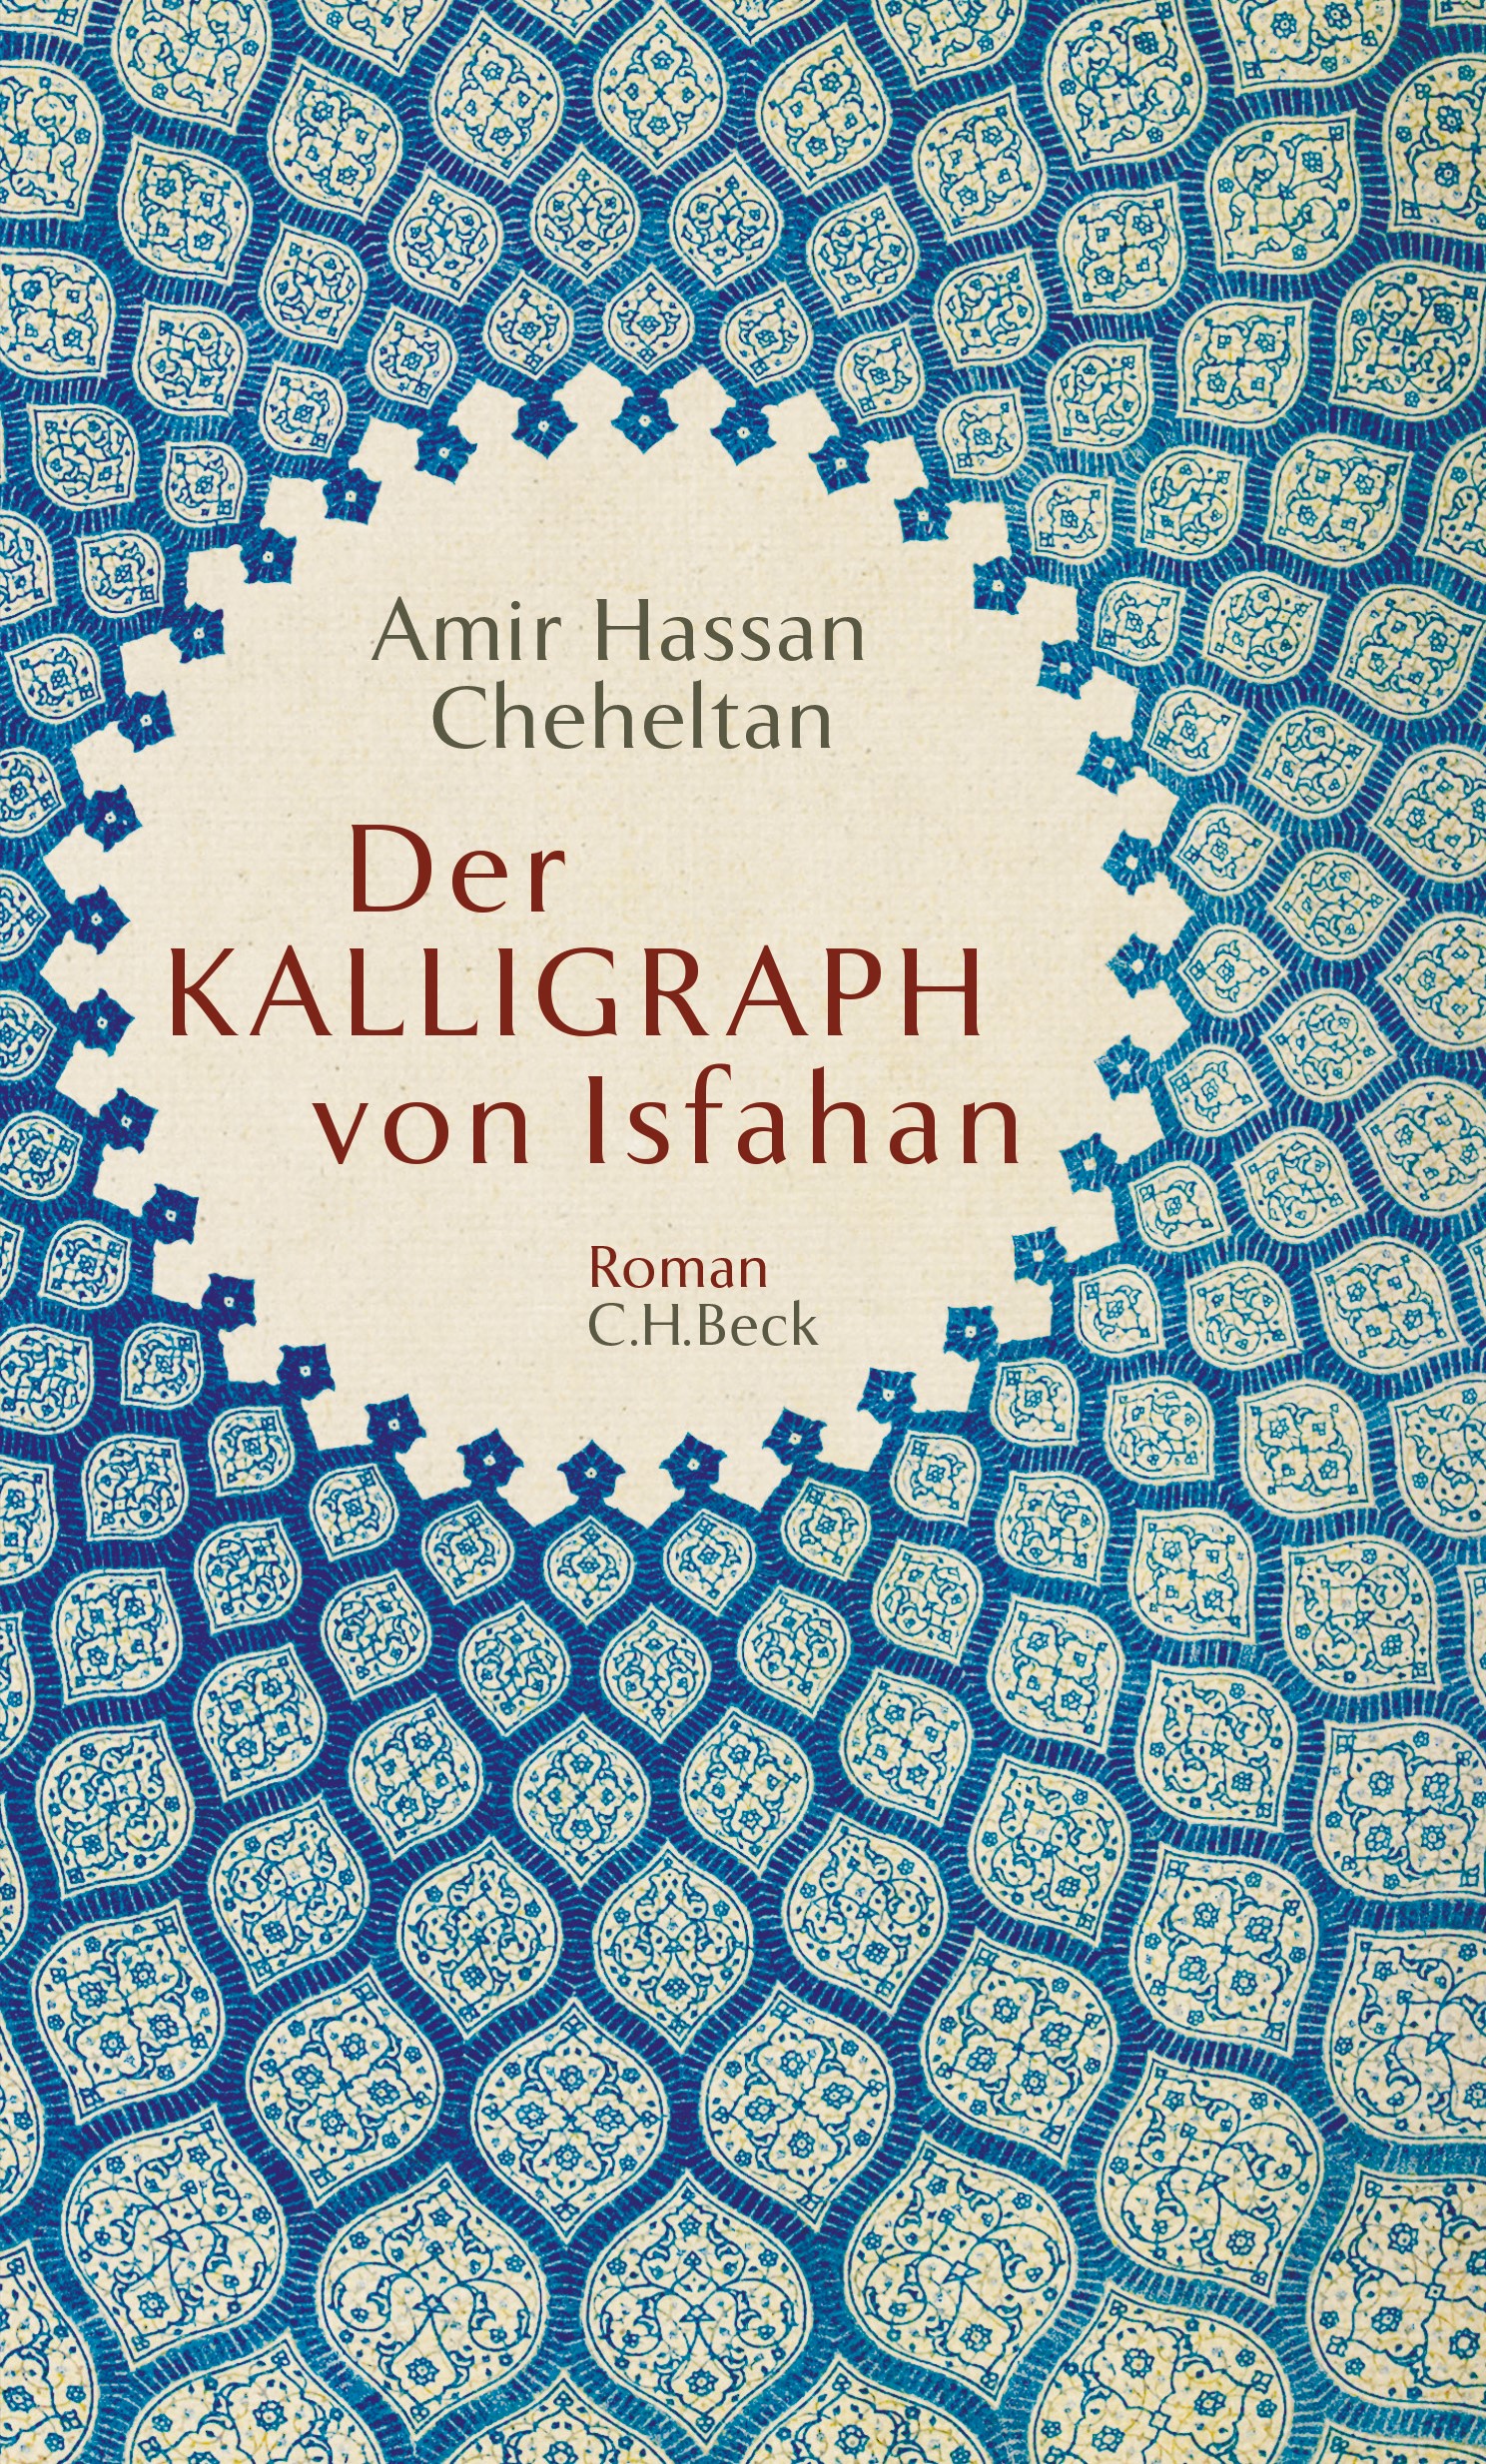 Cover: Cheheltan, Amir Hassan, Der Kalligraph von Isfahan